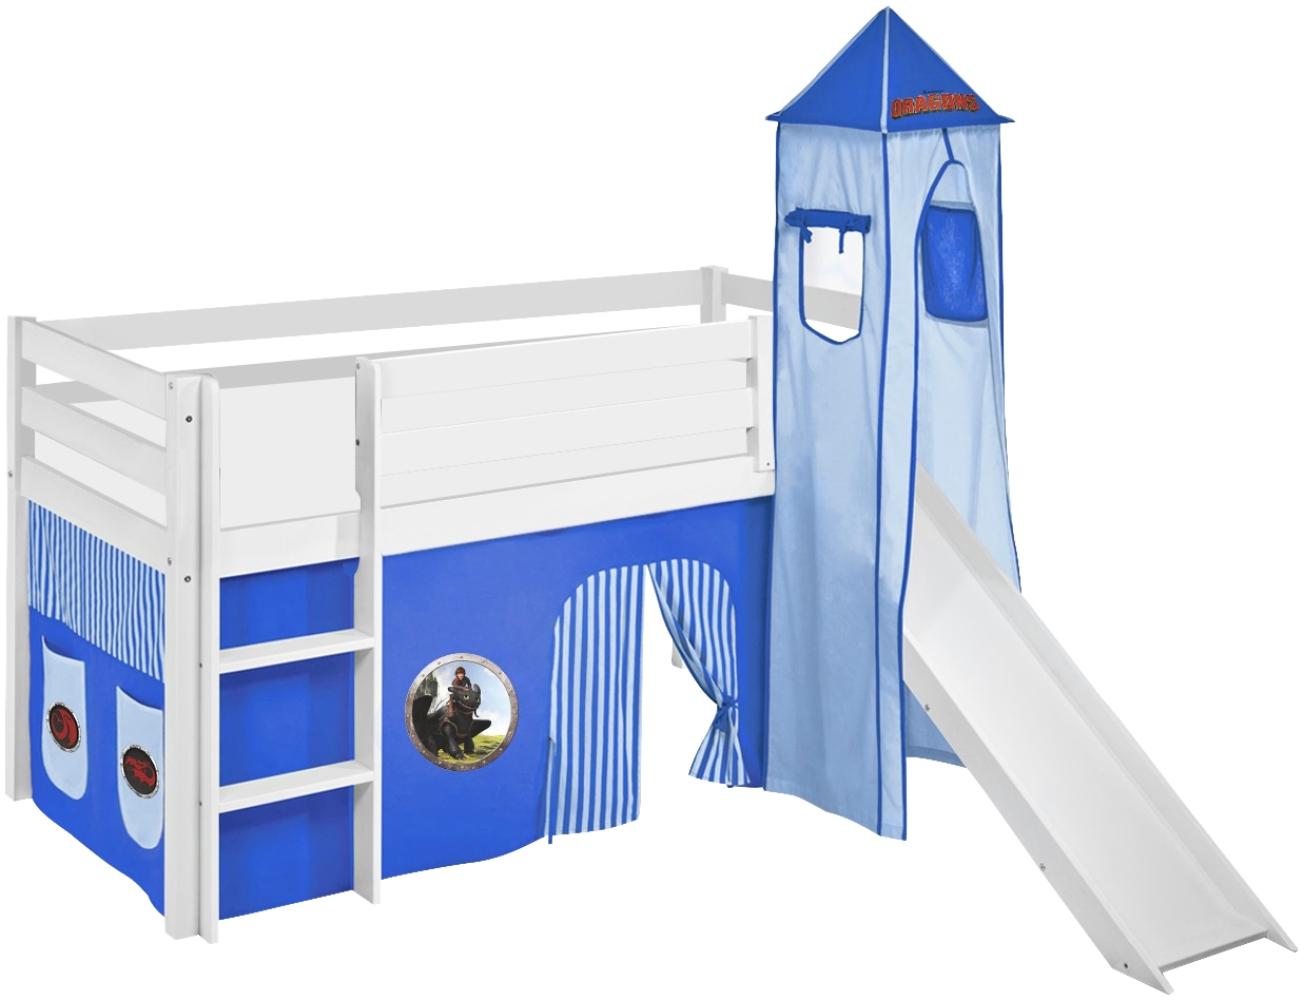 Lilokids 'Jelle' Spielbett 90 x 190 cm, Dragons Blau, Kiefer massiv, mit Turm, Rutsche und Vorhang Bild 1